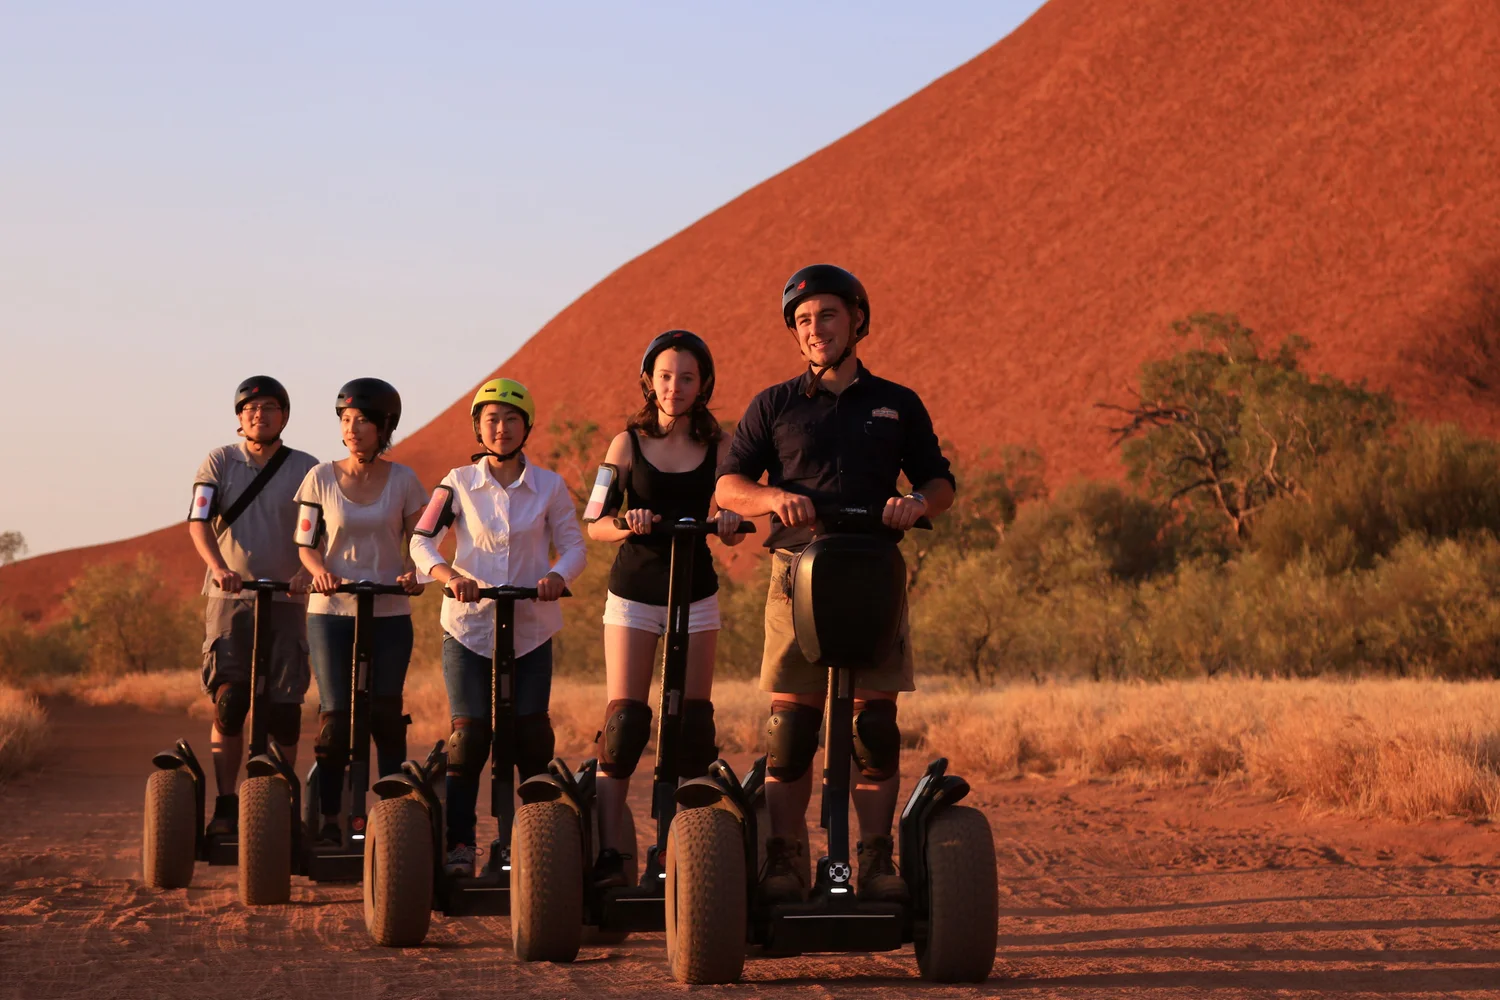 Quarter Uluru (Ayers Rock) Segway Tour at Sunset